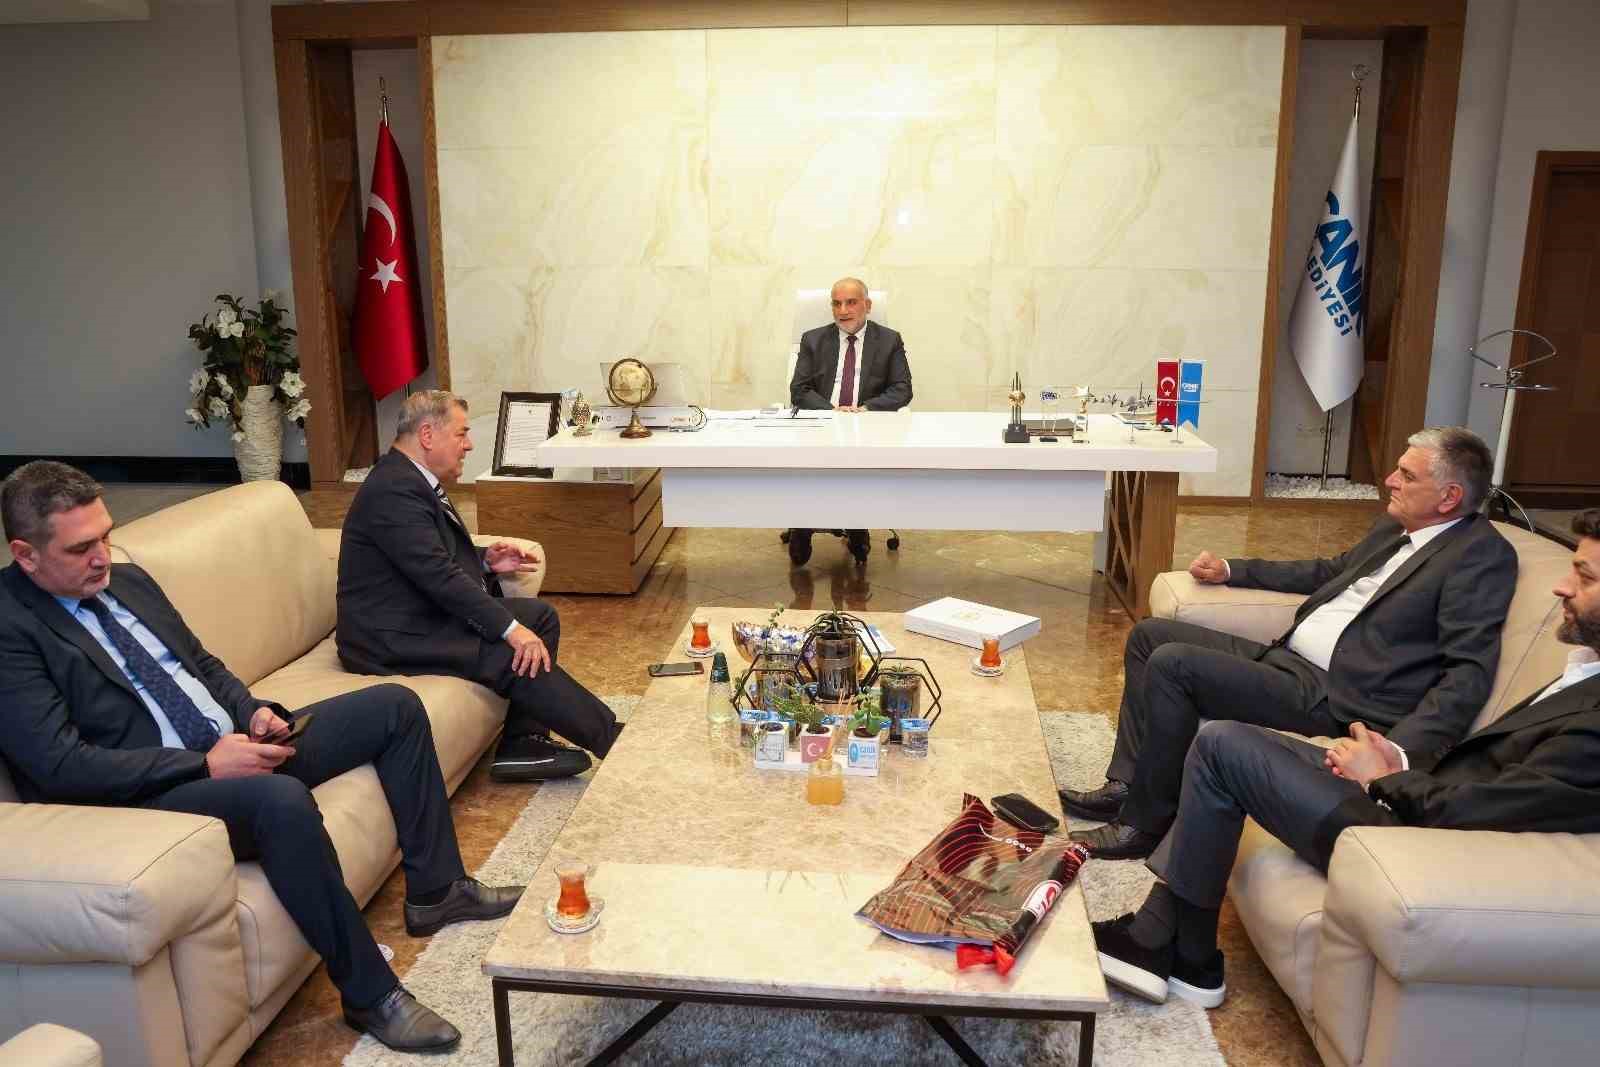 Başkan Sandıkçı: "Samsunspor’a destek olmaya devam edeceğiz"
